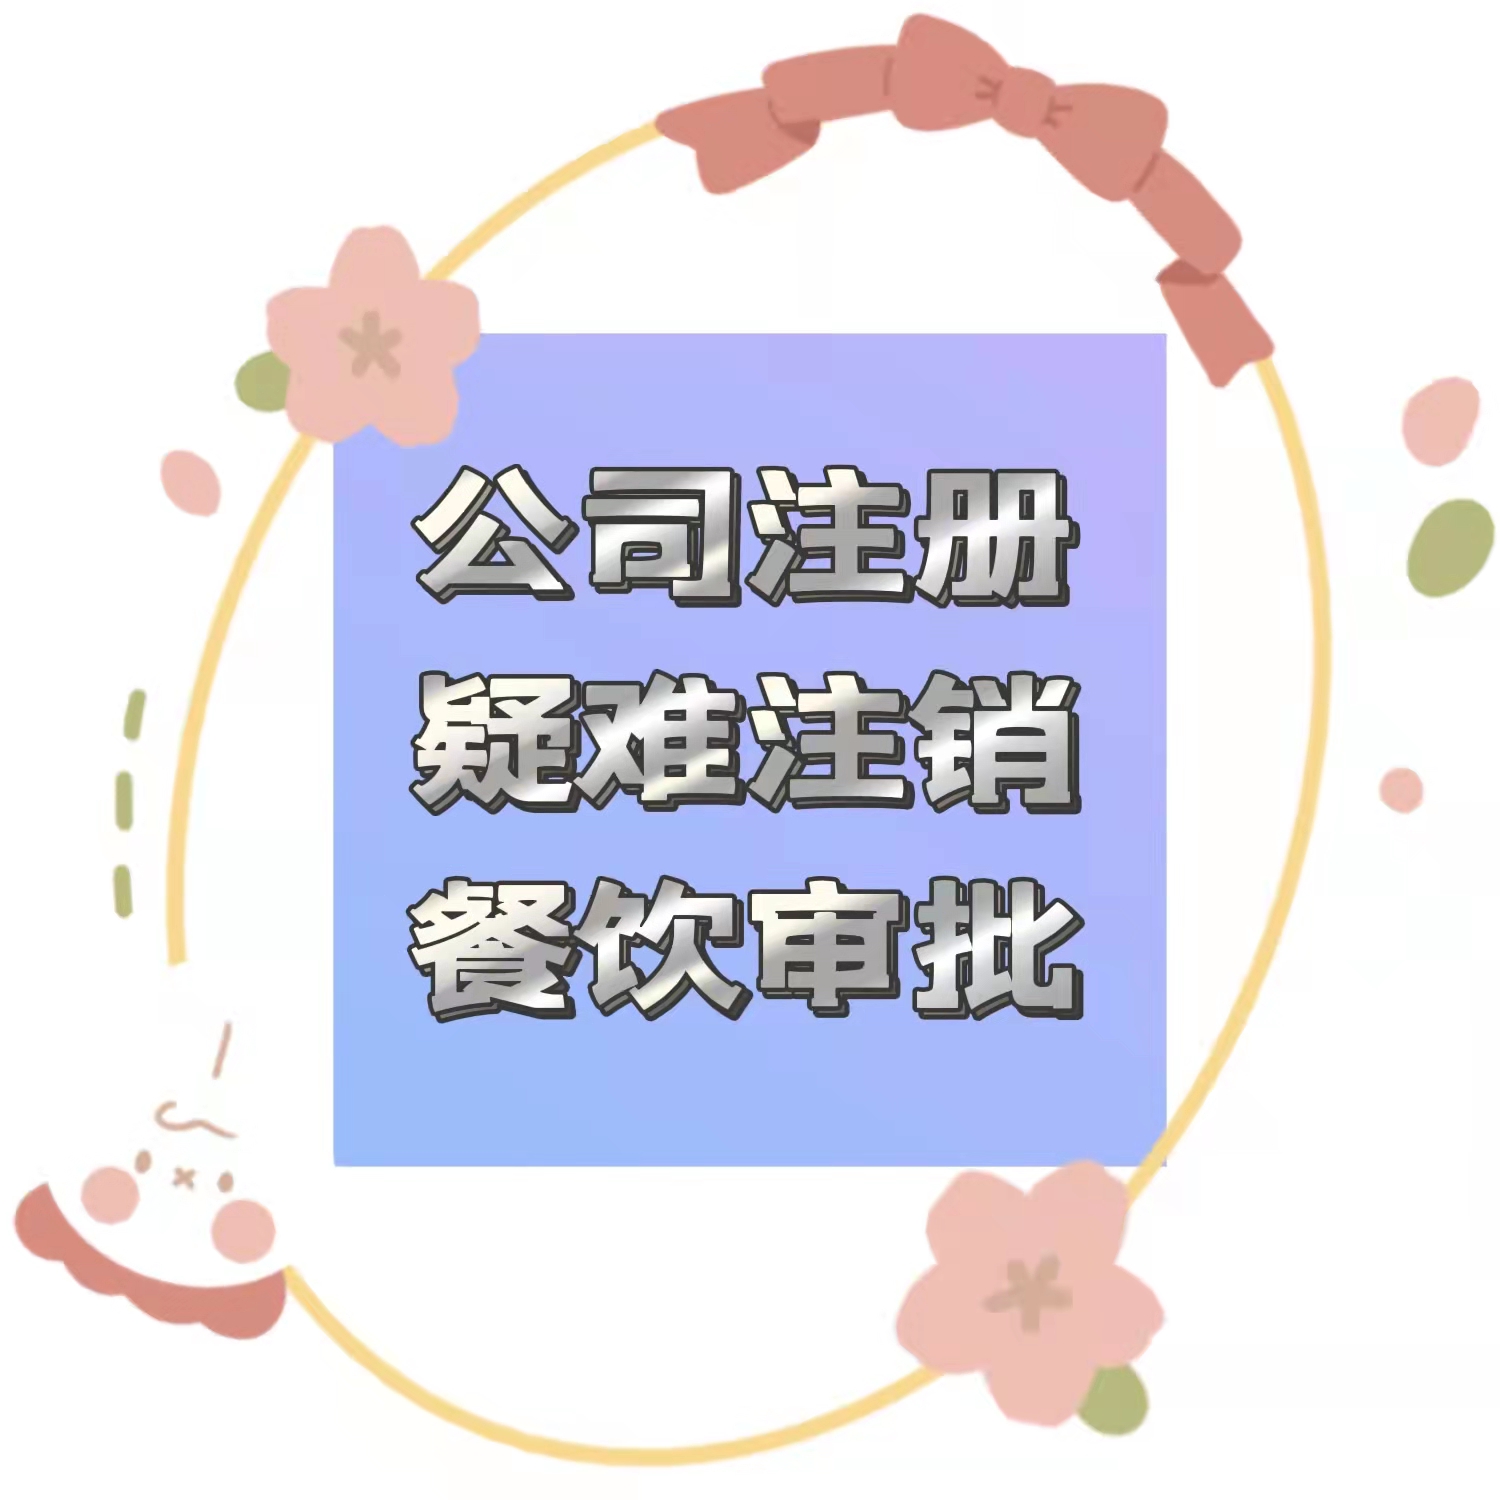 北京昌平区职工食堂的营业执照食品经营许可证经验十足